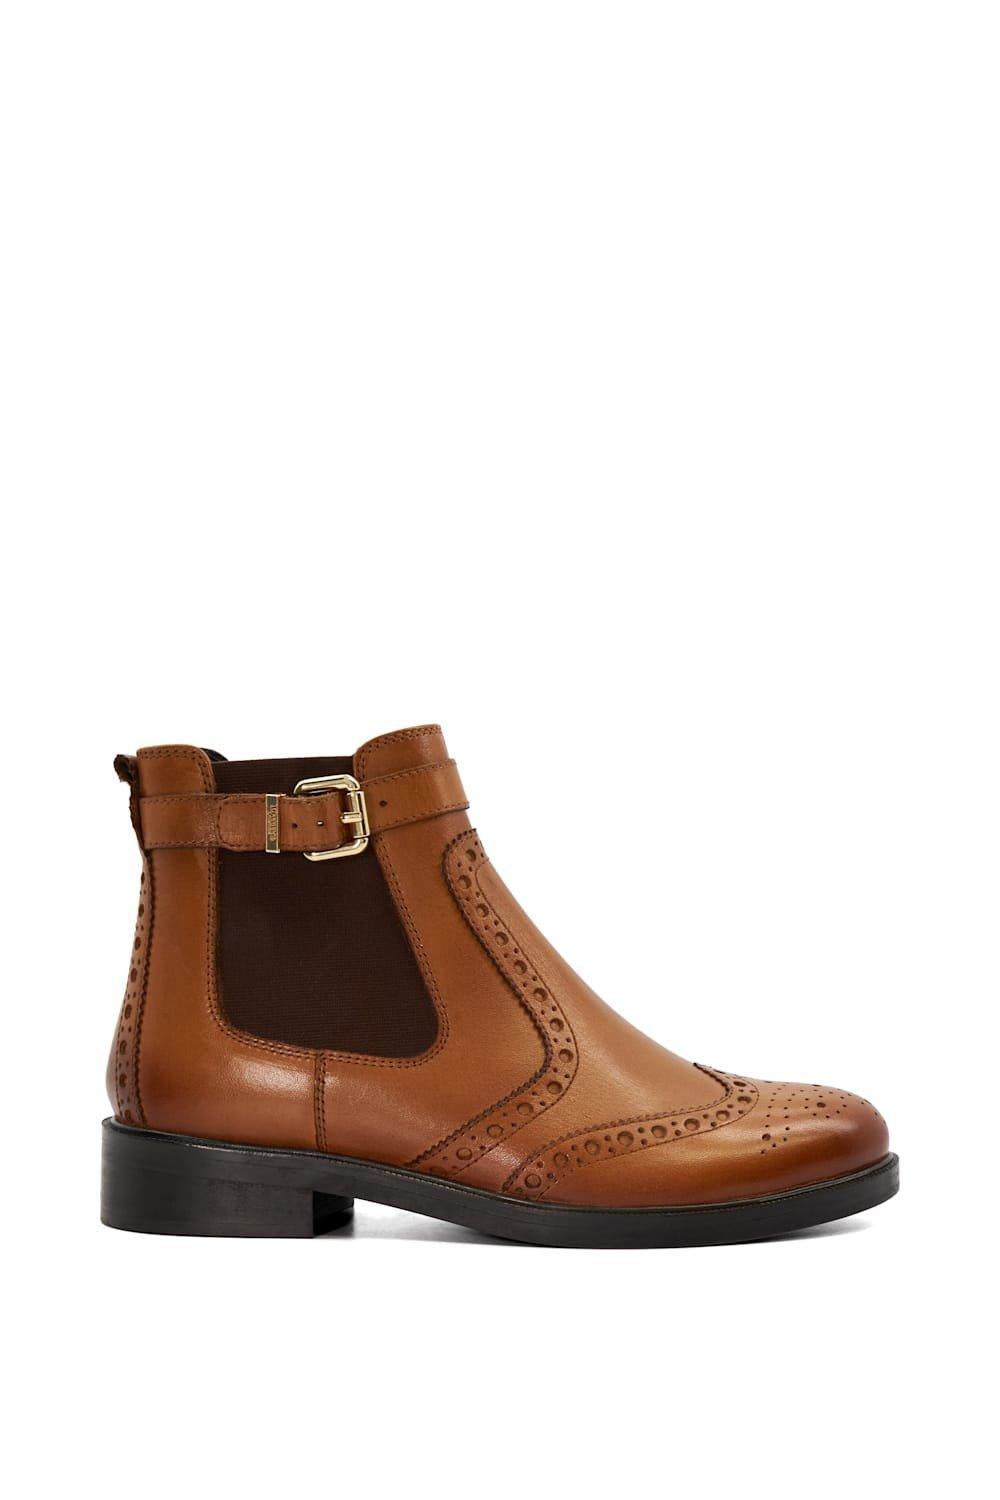 Кожаные ботинки челси с надписью «Вопрос» Dune London, коричневый